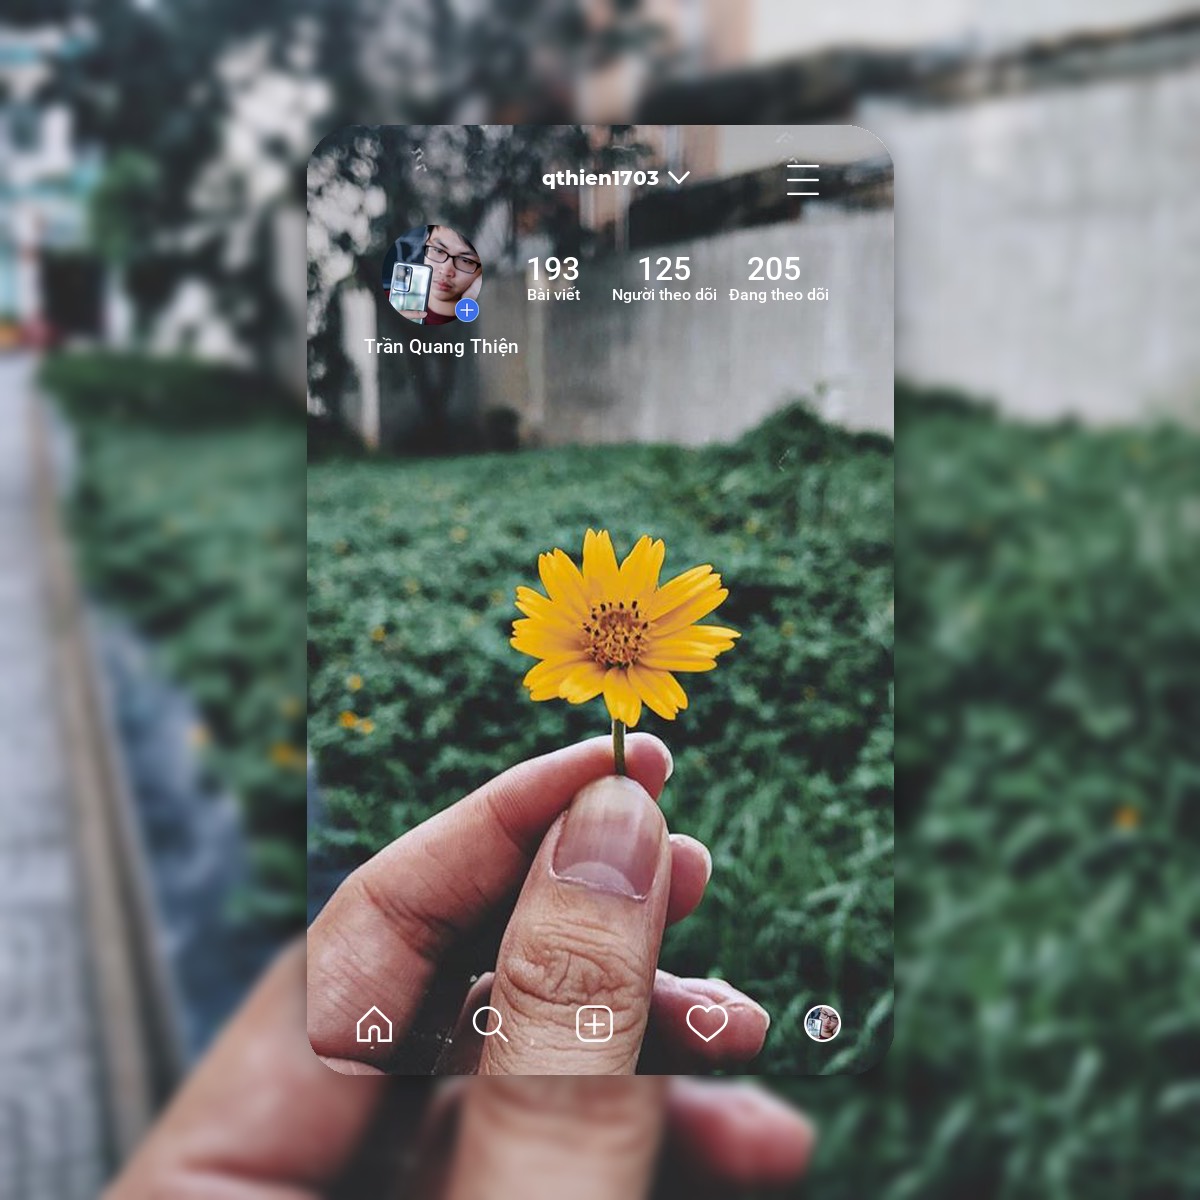 Với Instacard, bạn có thể dễ dàng tạo ra những bức ảnh độc đáo và sáng tạo để chia sẻ trên Instagram và thu hút người theo dõi.